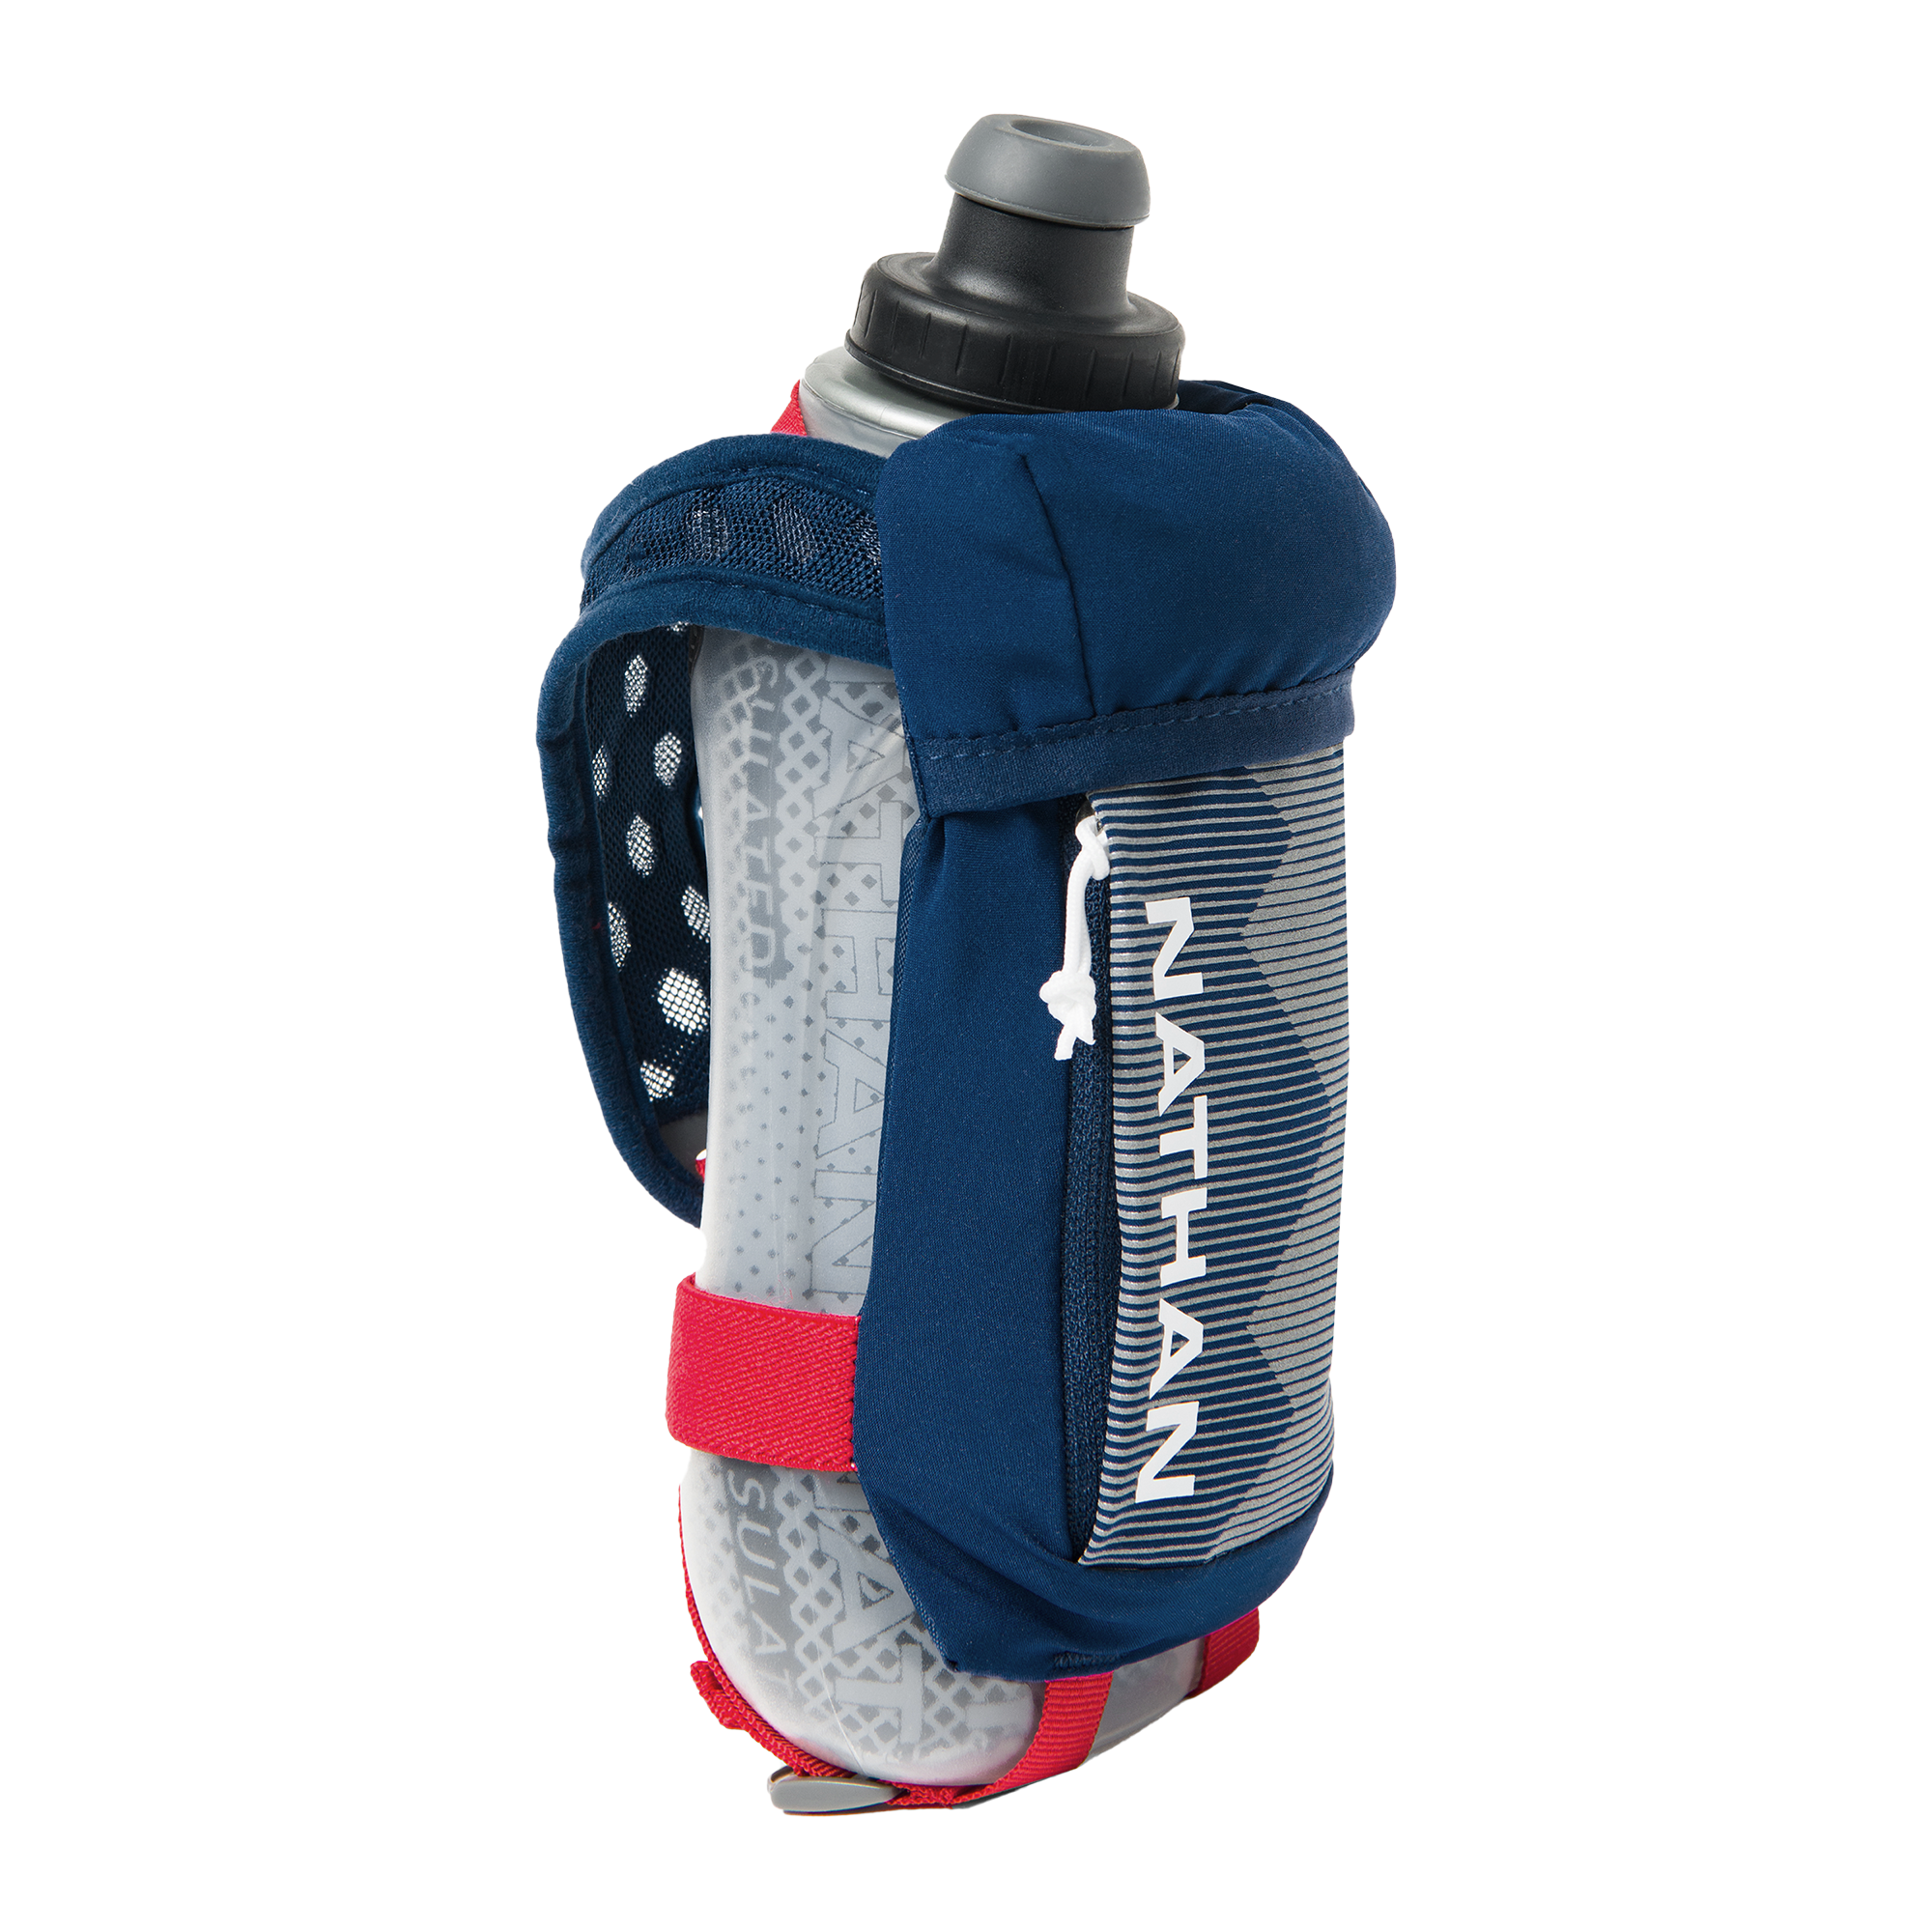 Nathan SpeedShot Plus 12oz Water Bottle - Hike & Camp